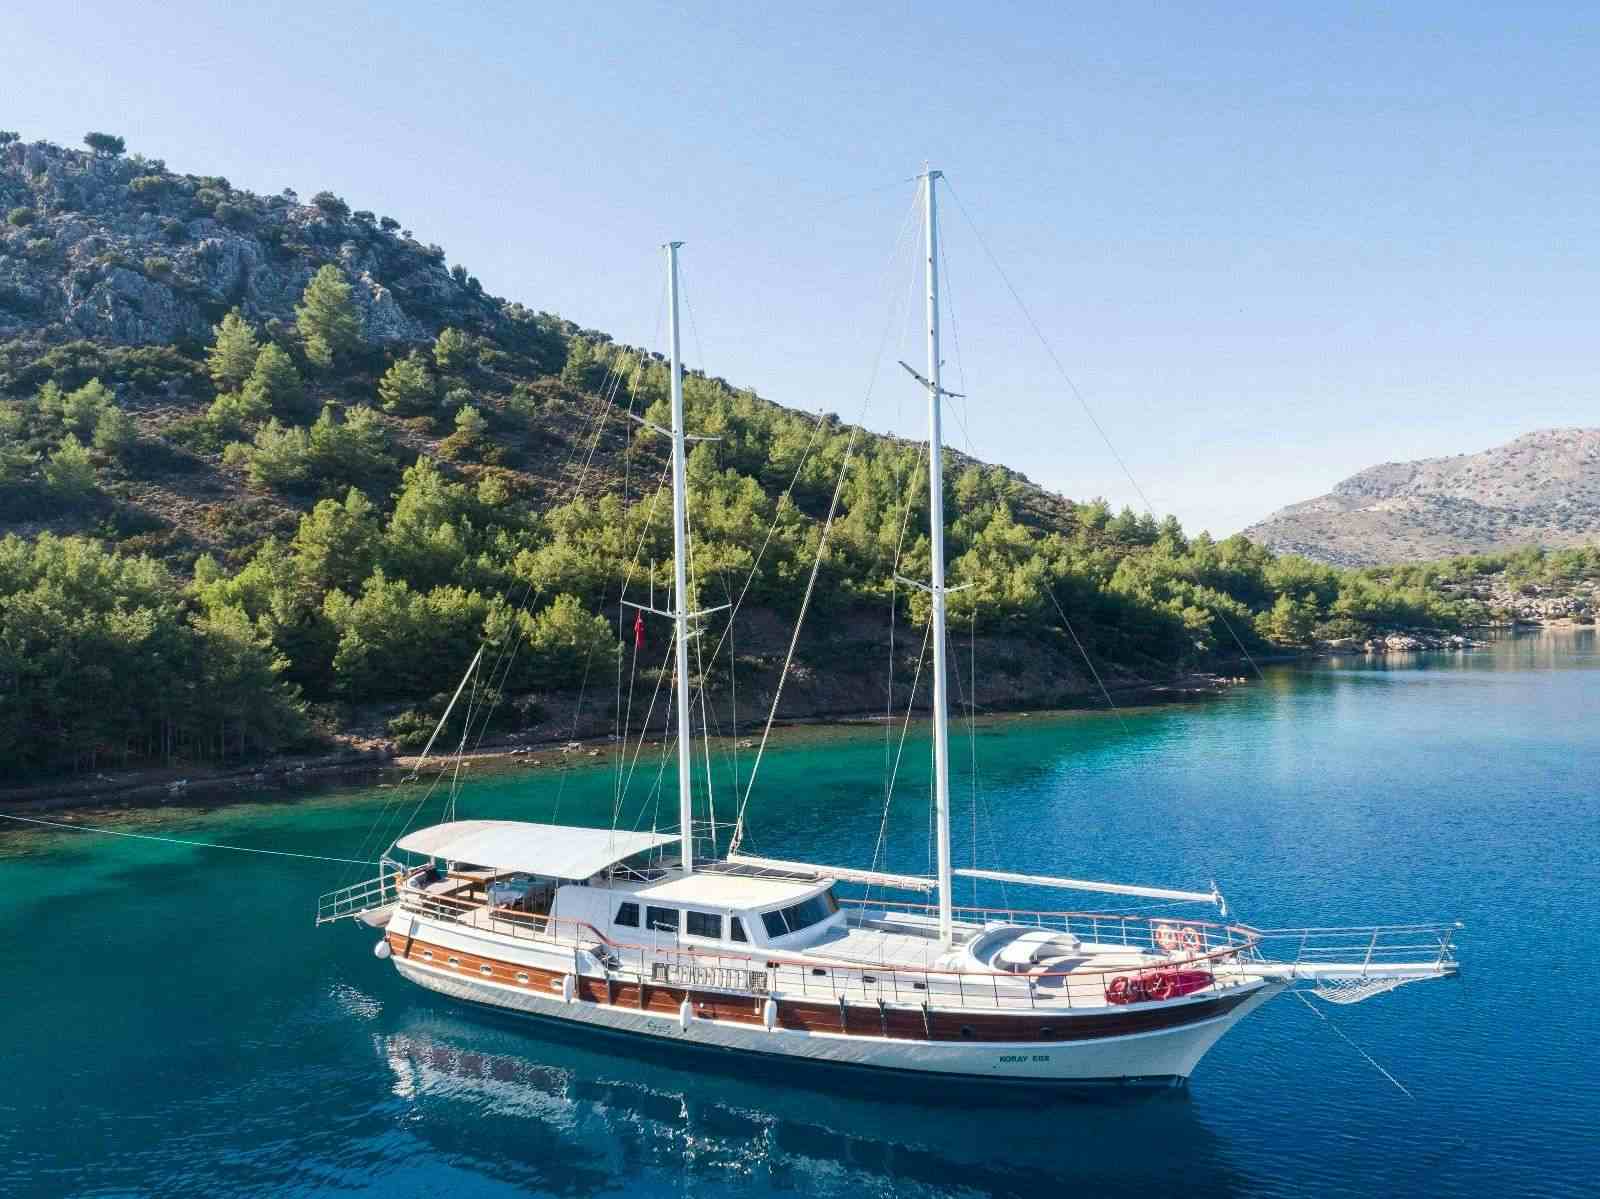 koray ege - Yacht Charter Palaio Faliro & Boat hire in Greece & Turkey 1